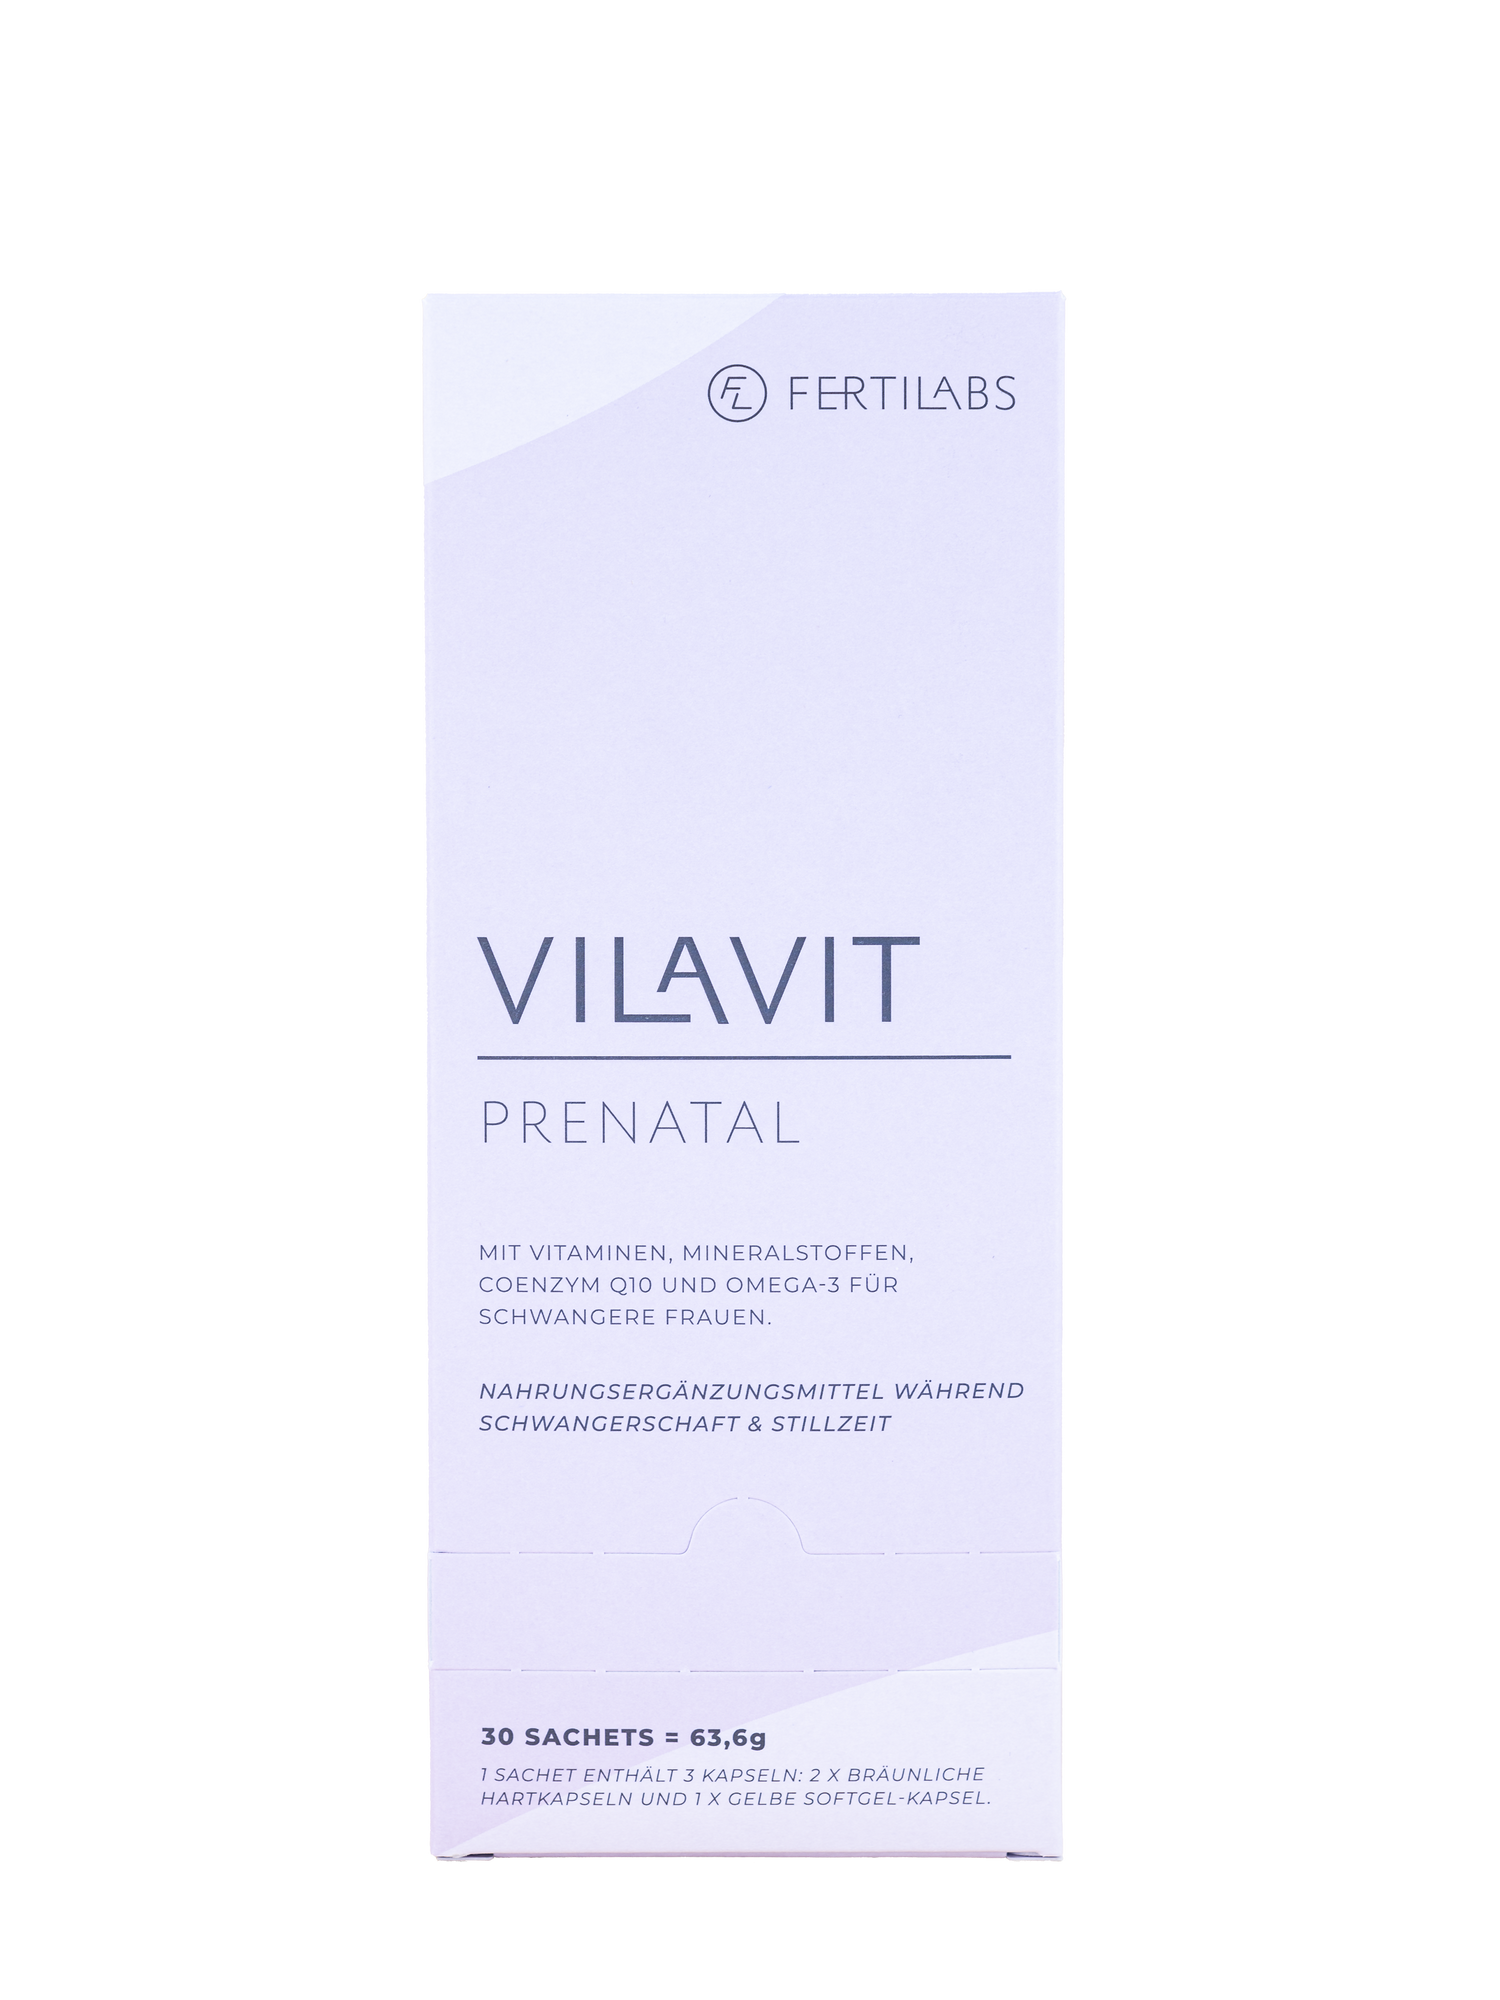 VILAVIT Prenatal für Schwangerschaft und Stillzeit